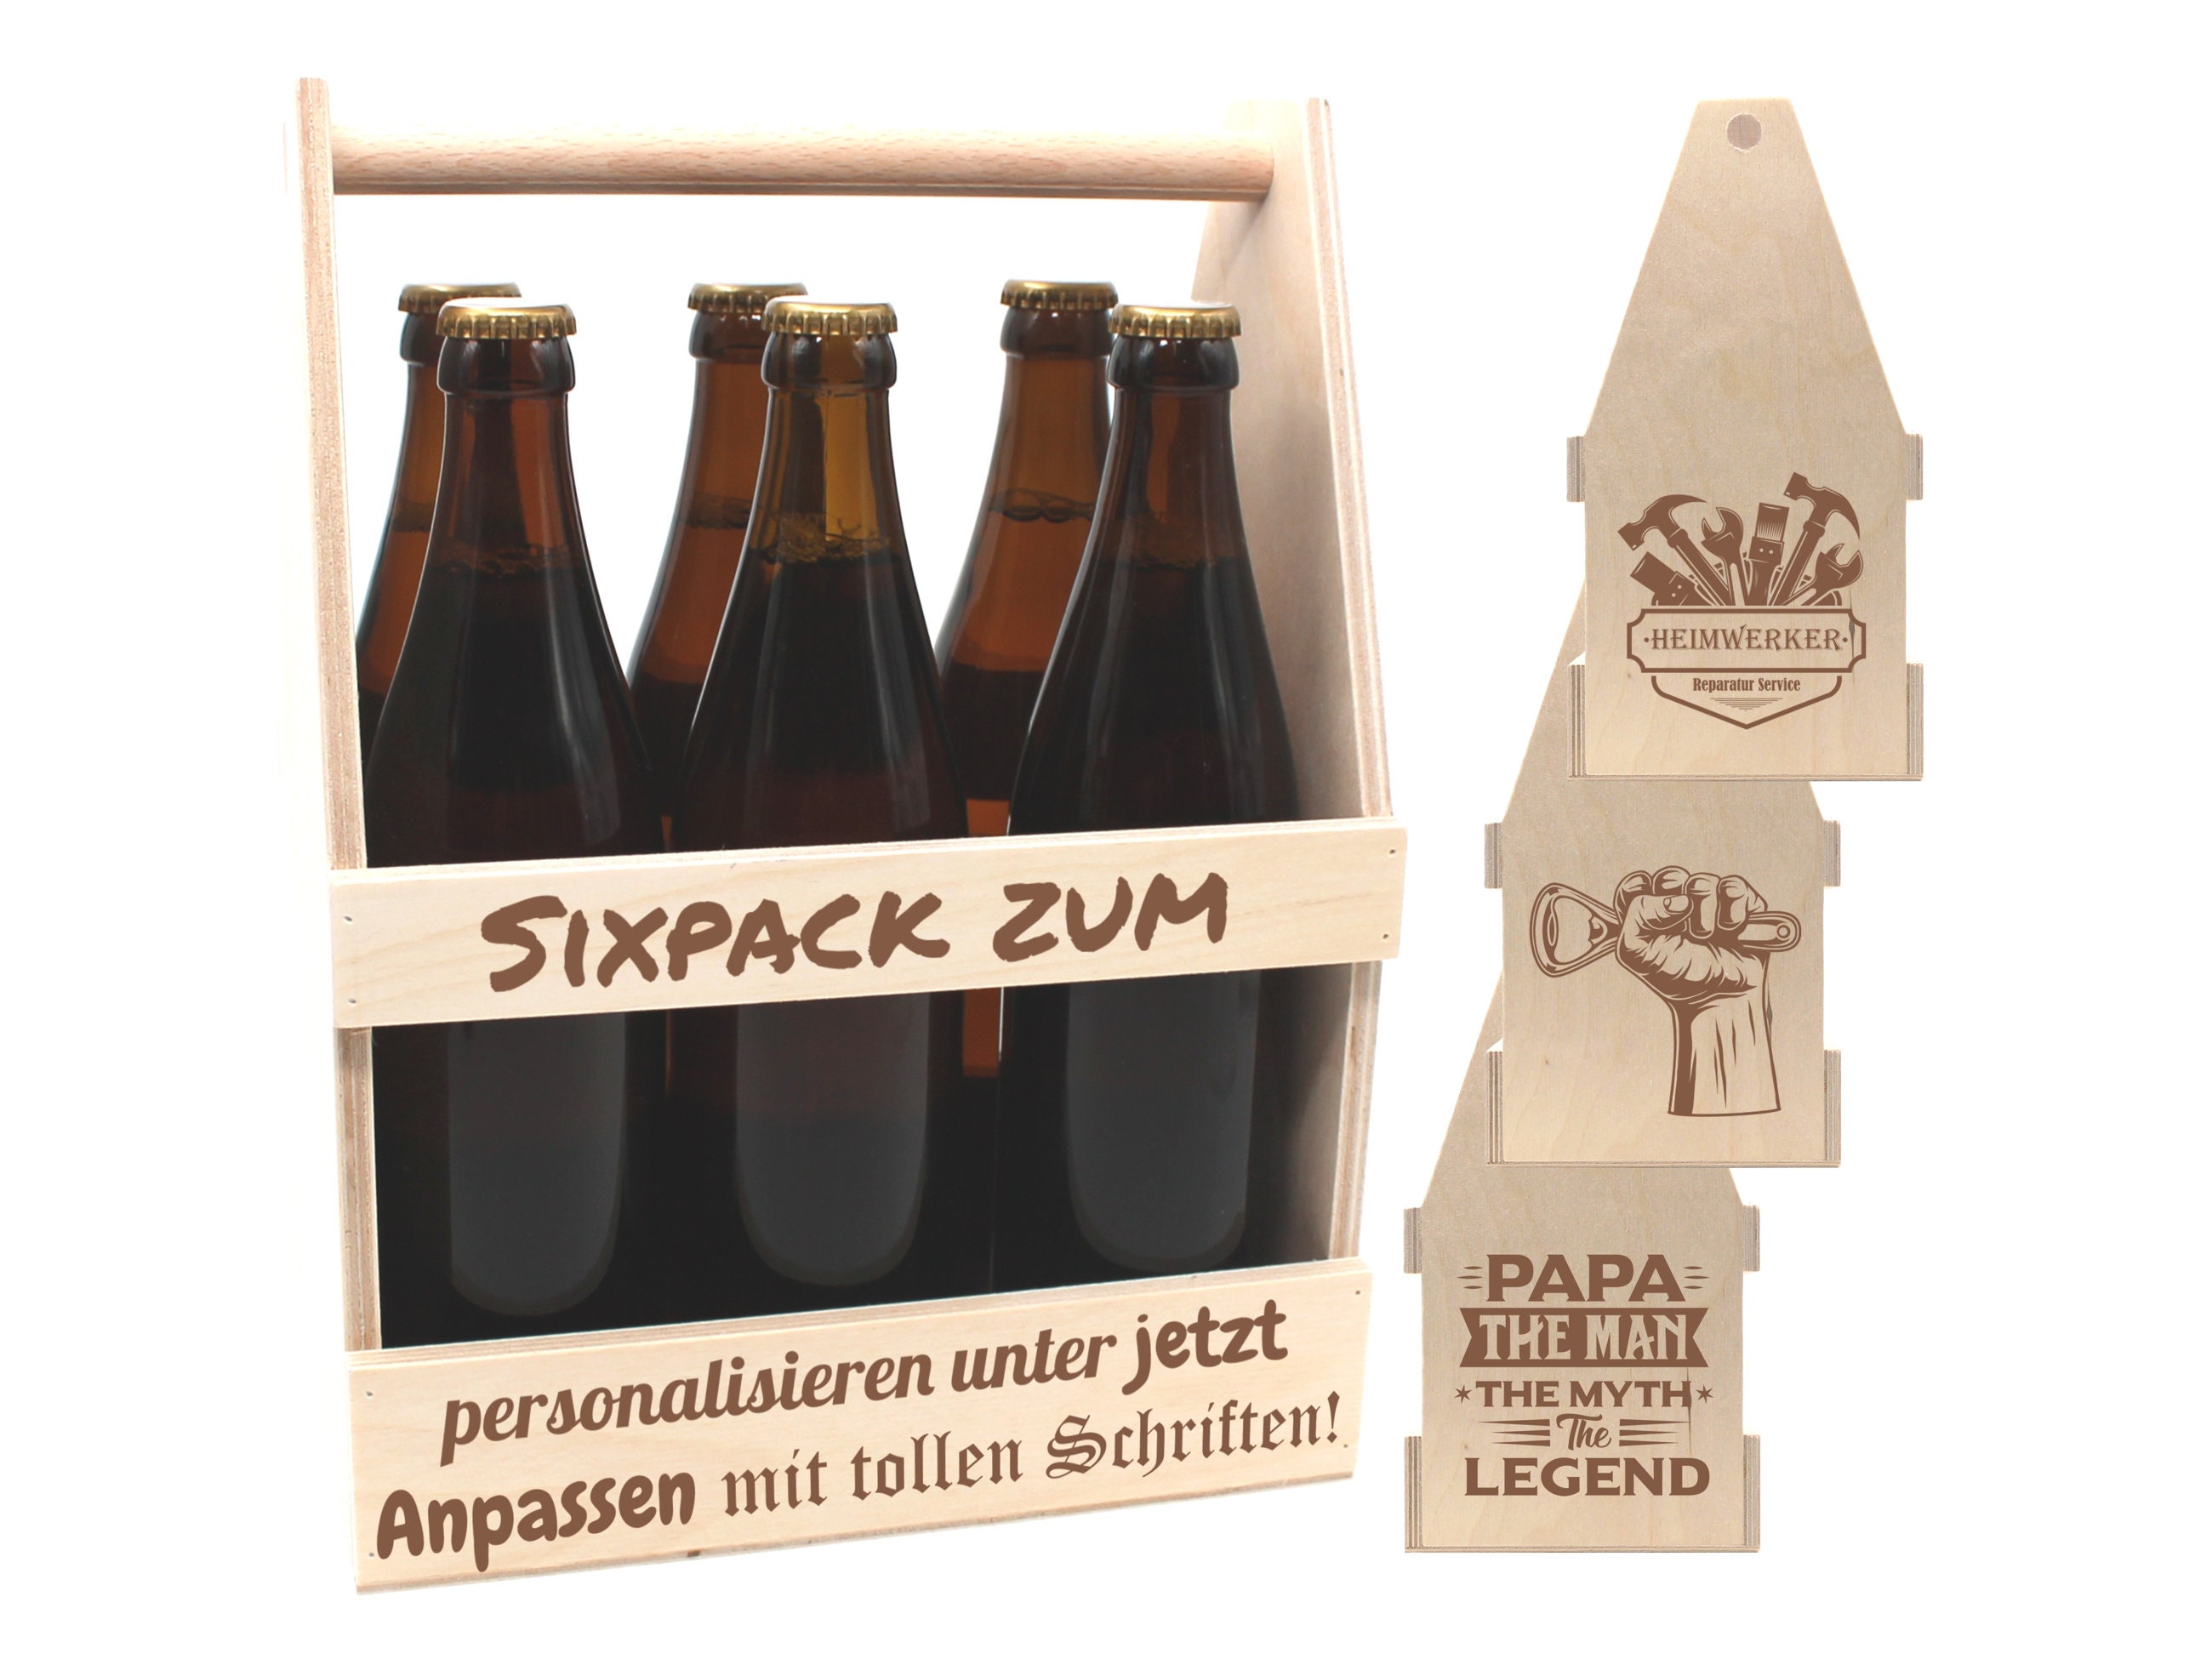 Bierflaschen-Etiketten Team Bräutigam  Trauzeuge, Trauzeugen geschenk,  Flaschenöffner wand